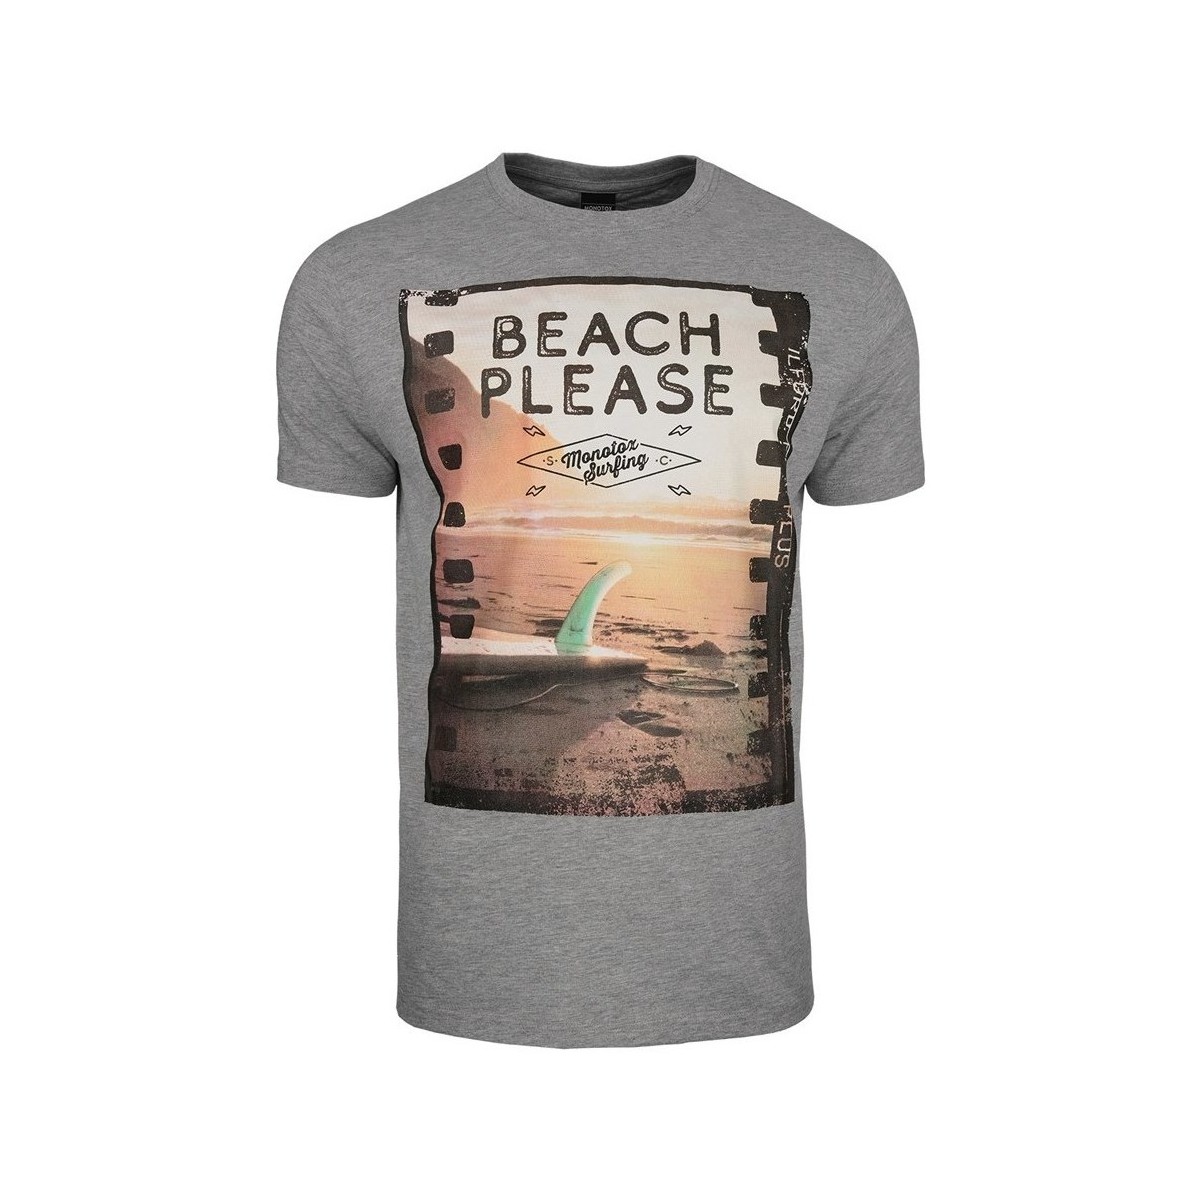 Textil Homem T-Shirt mangas curtas Monotox Beach Cinza